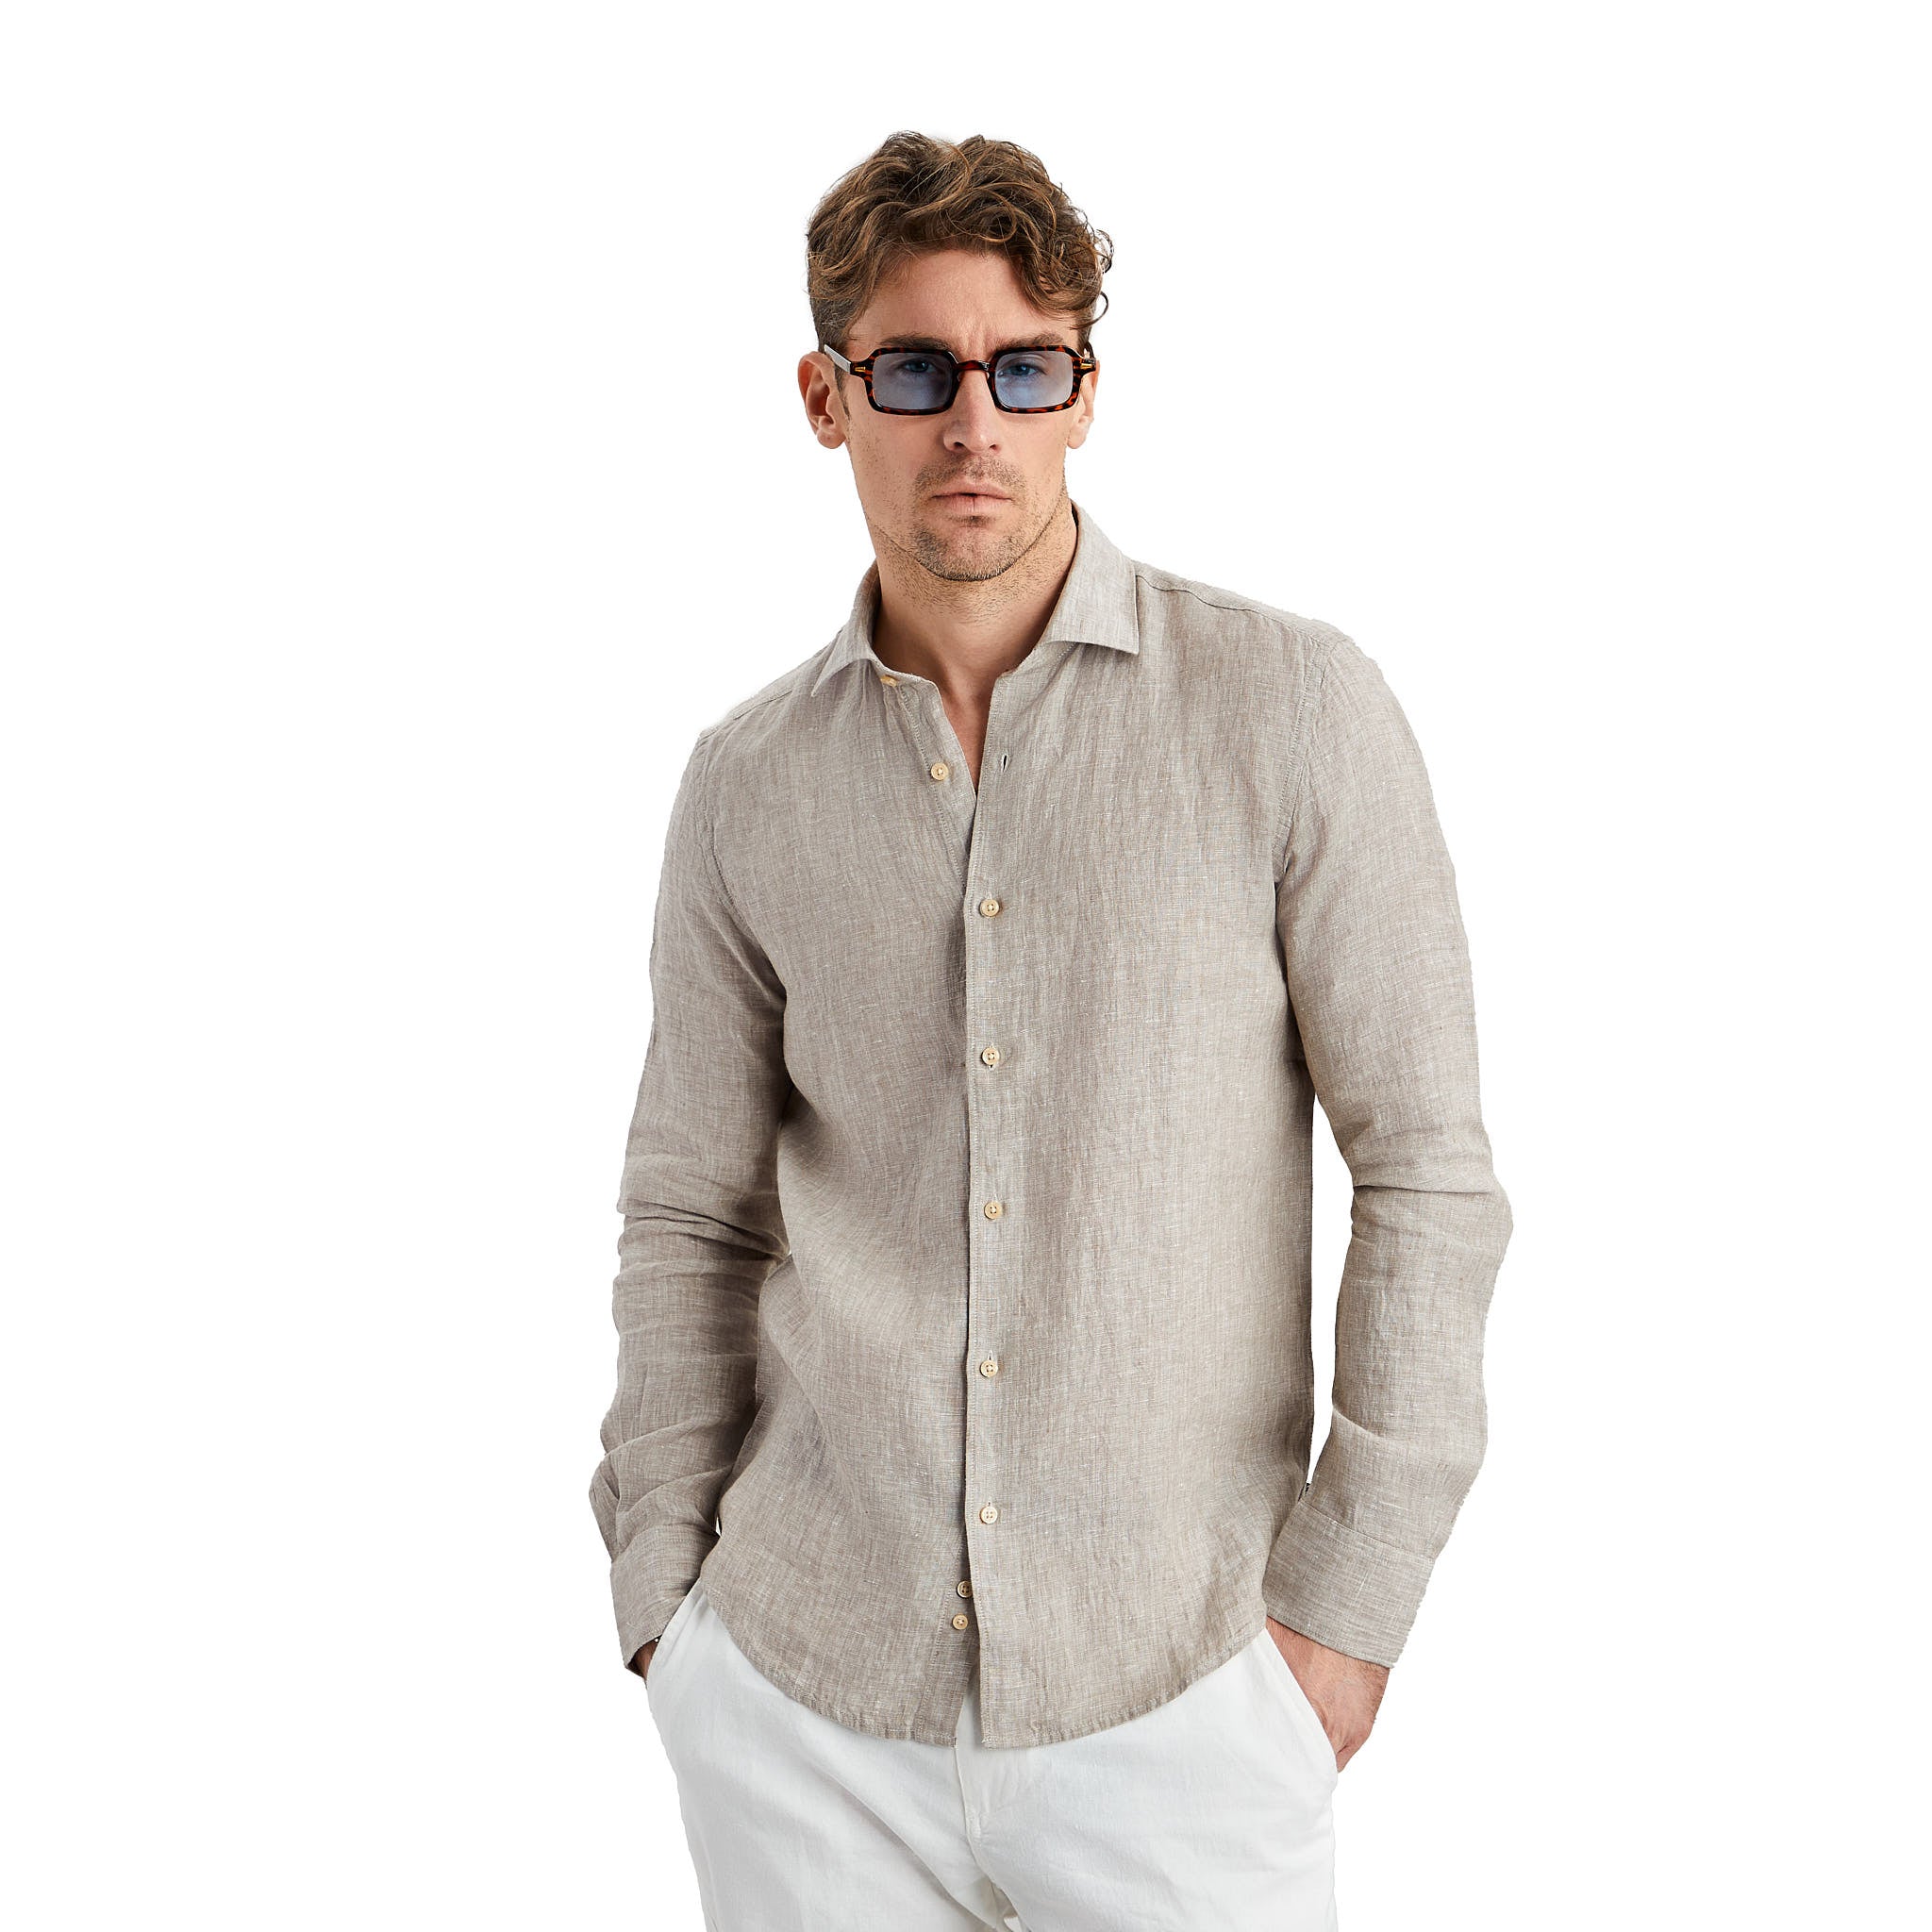 A beige linen shirt always stays trendy in summer.